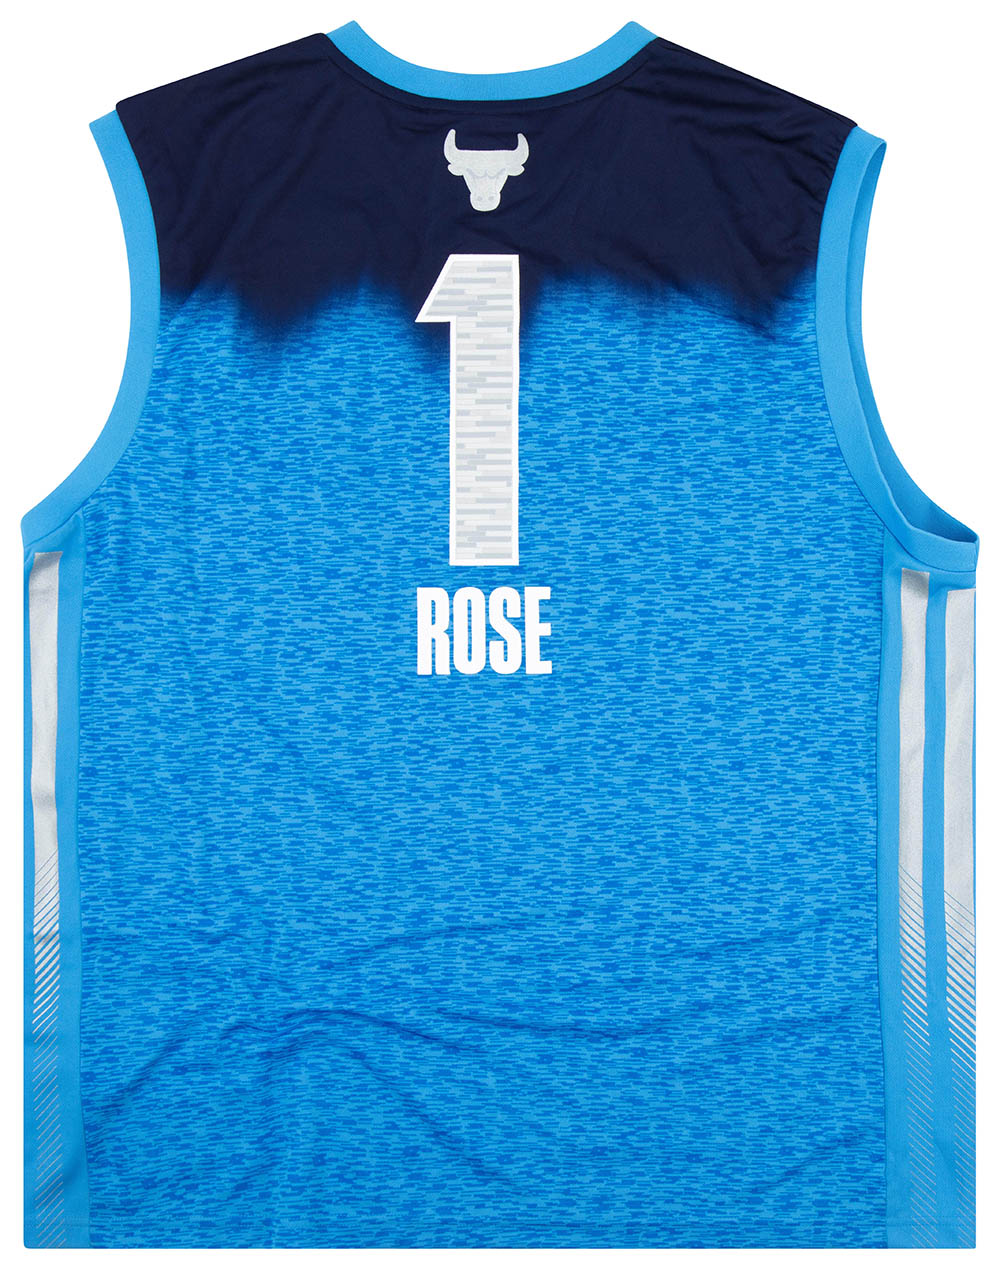 2012 NBA ALL-STAR ROSE #1 ADIDAS JERSEY XXL - W/TAGS